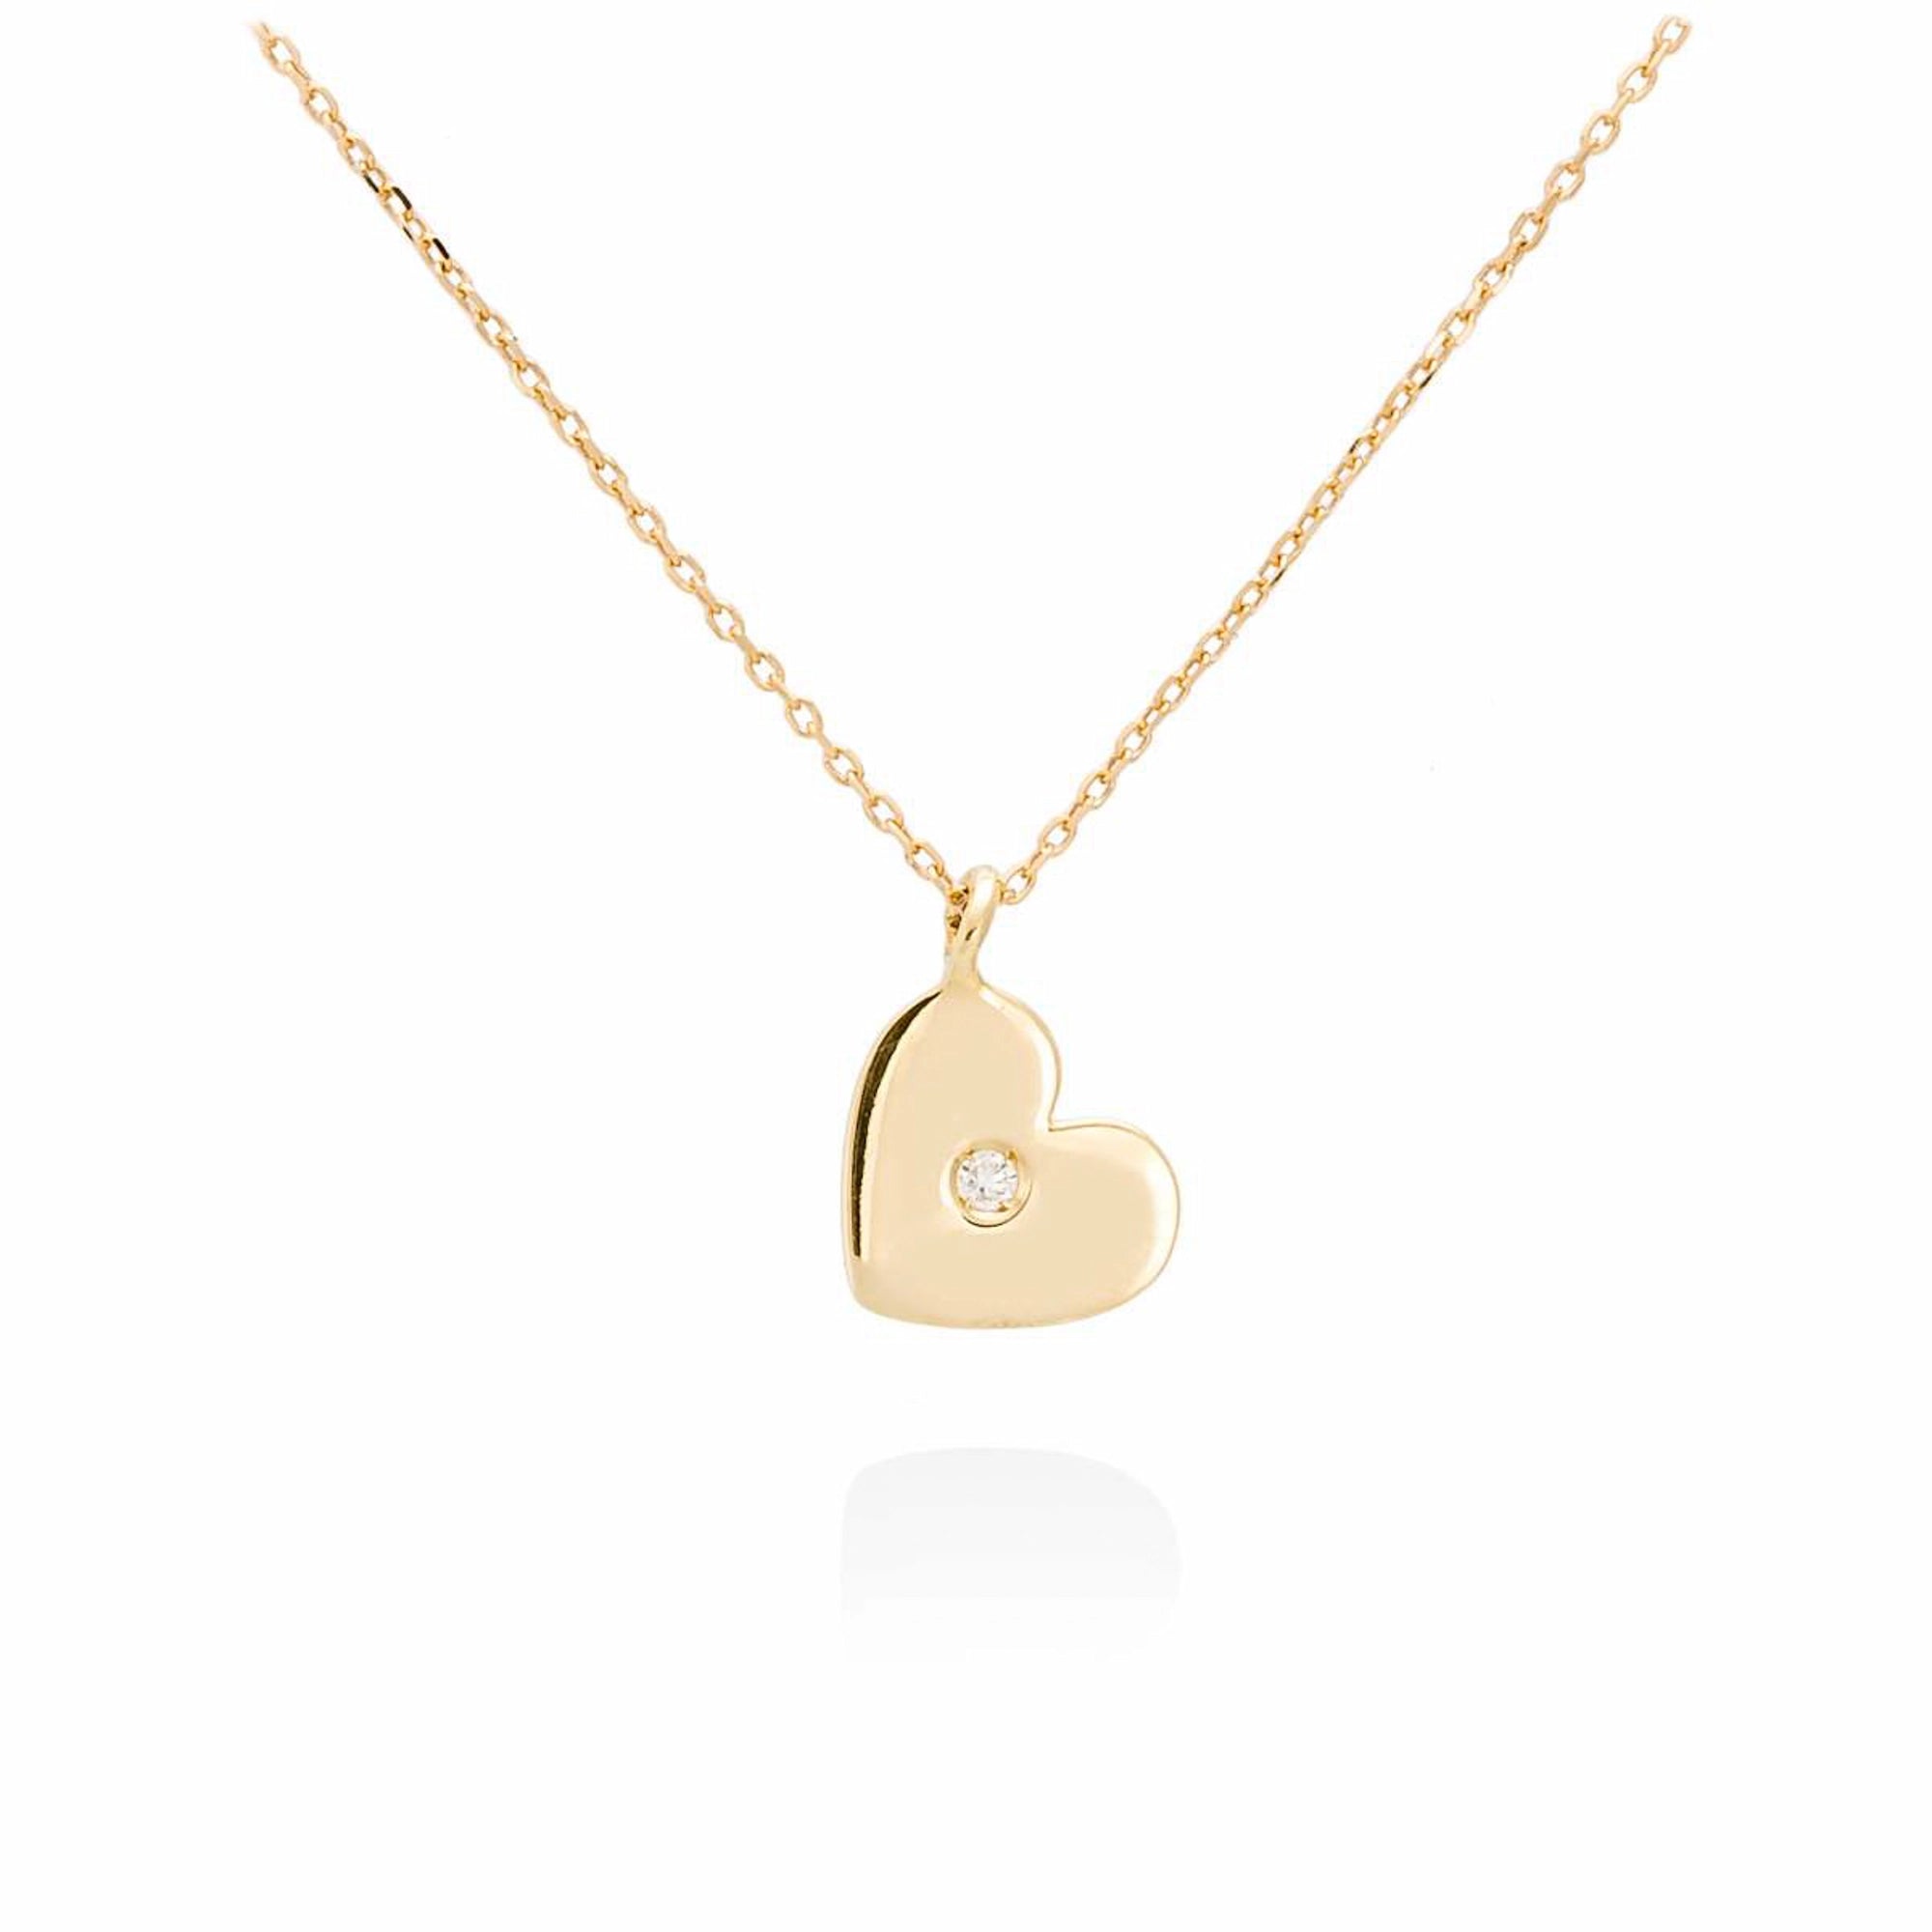 Produktfotografie mit weißem Hintergrund der Marina Garcia Halskette A2631GA45 mit einem Gold-Plättchen in Herzform mit einem zentralen Diamanten als ANhänger